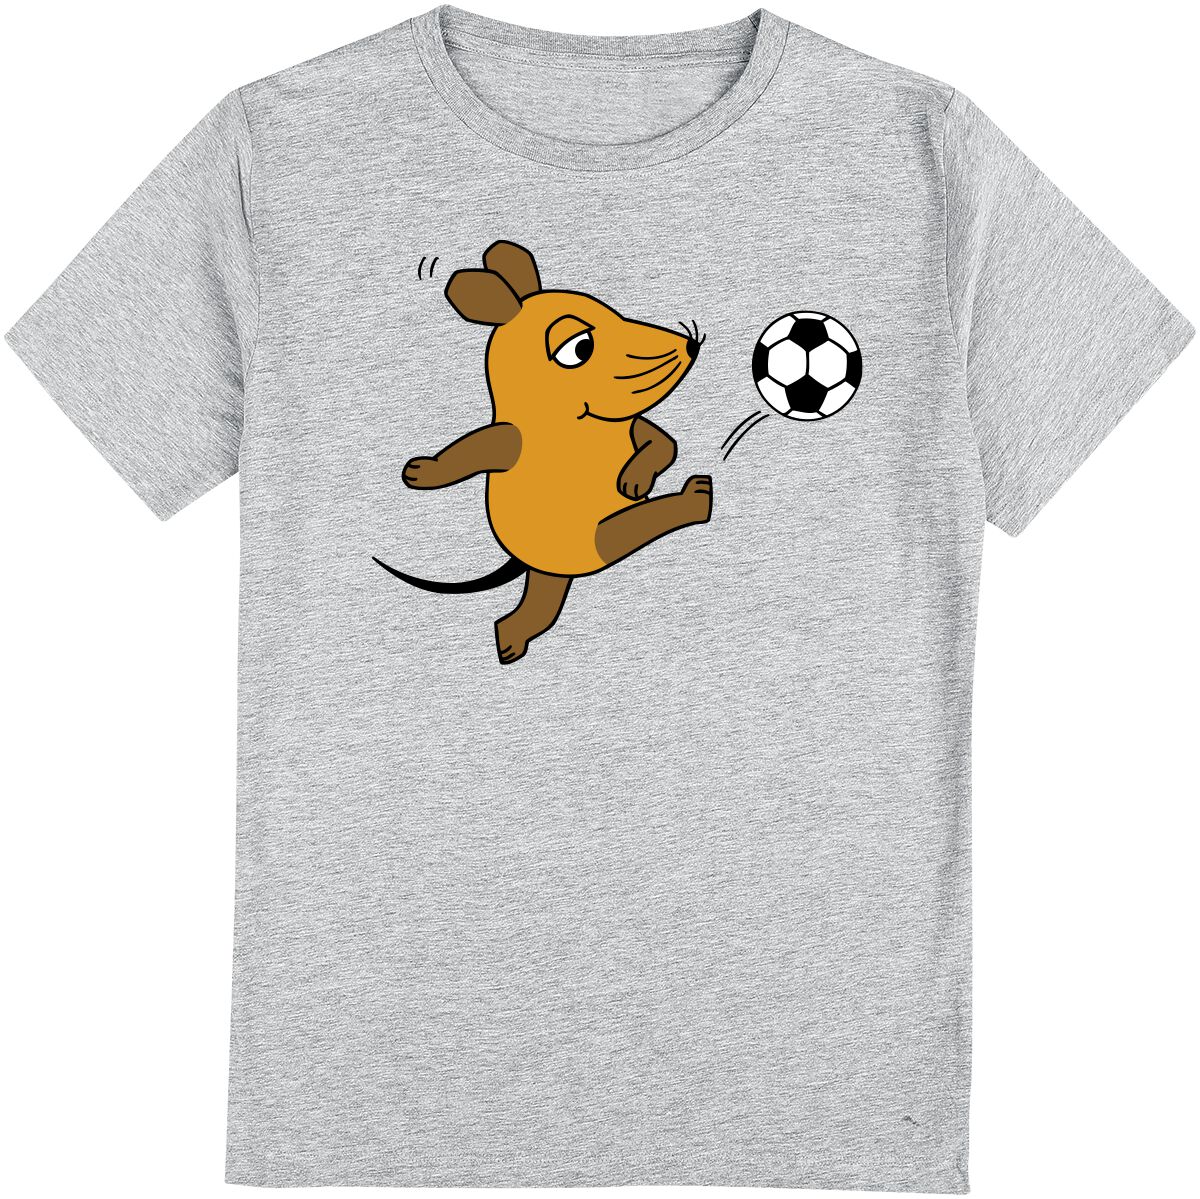 Die Sendung mit der Maus Kids - Die Maus - Fußball T-Shirt grau meliert in 98